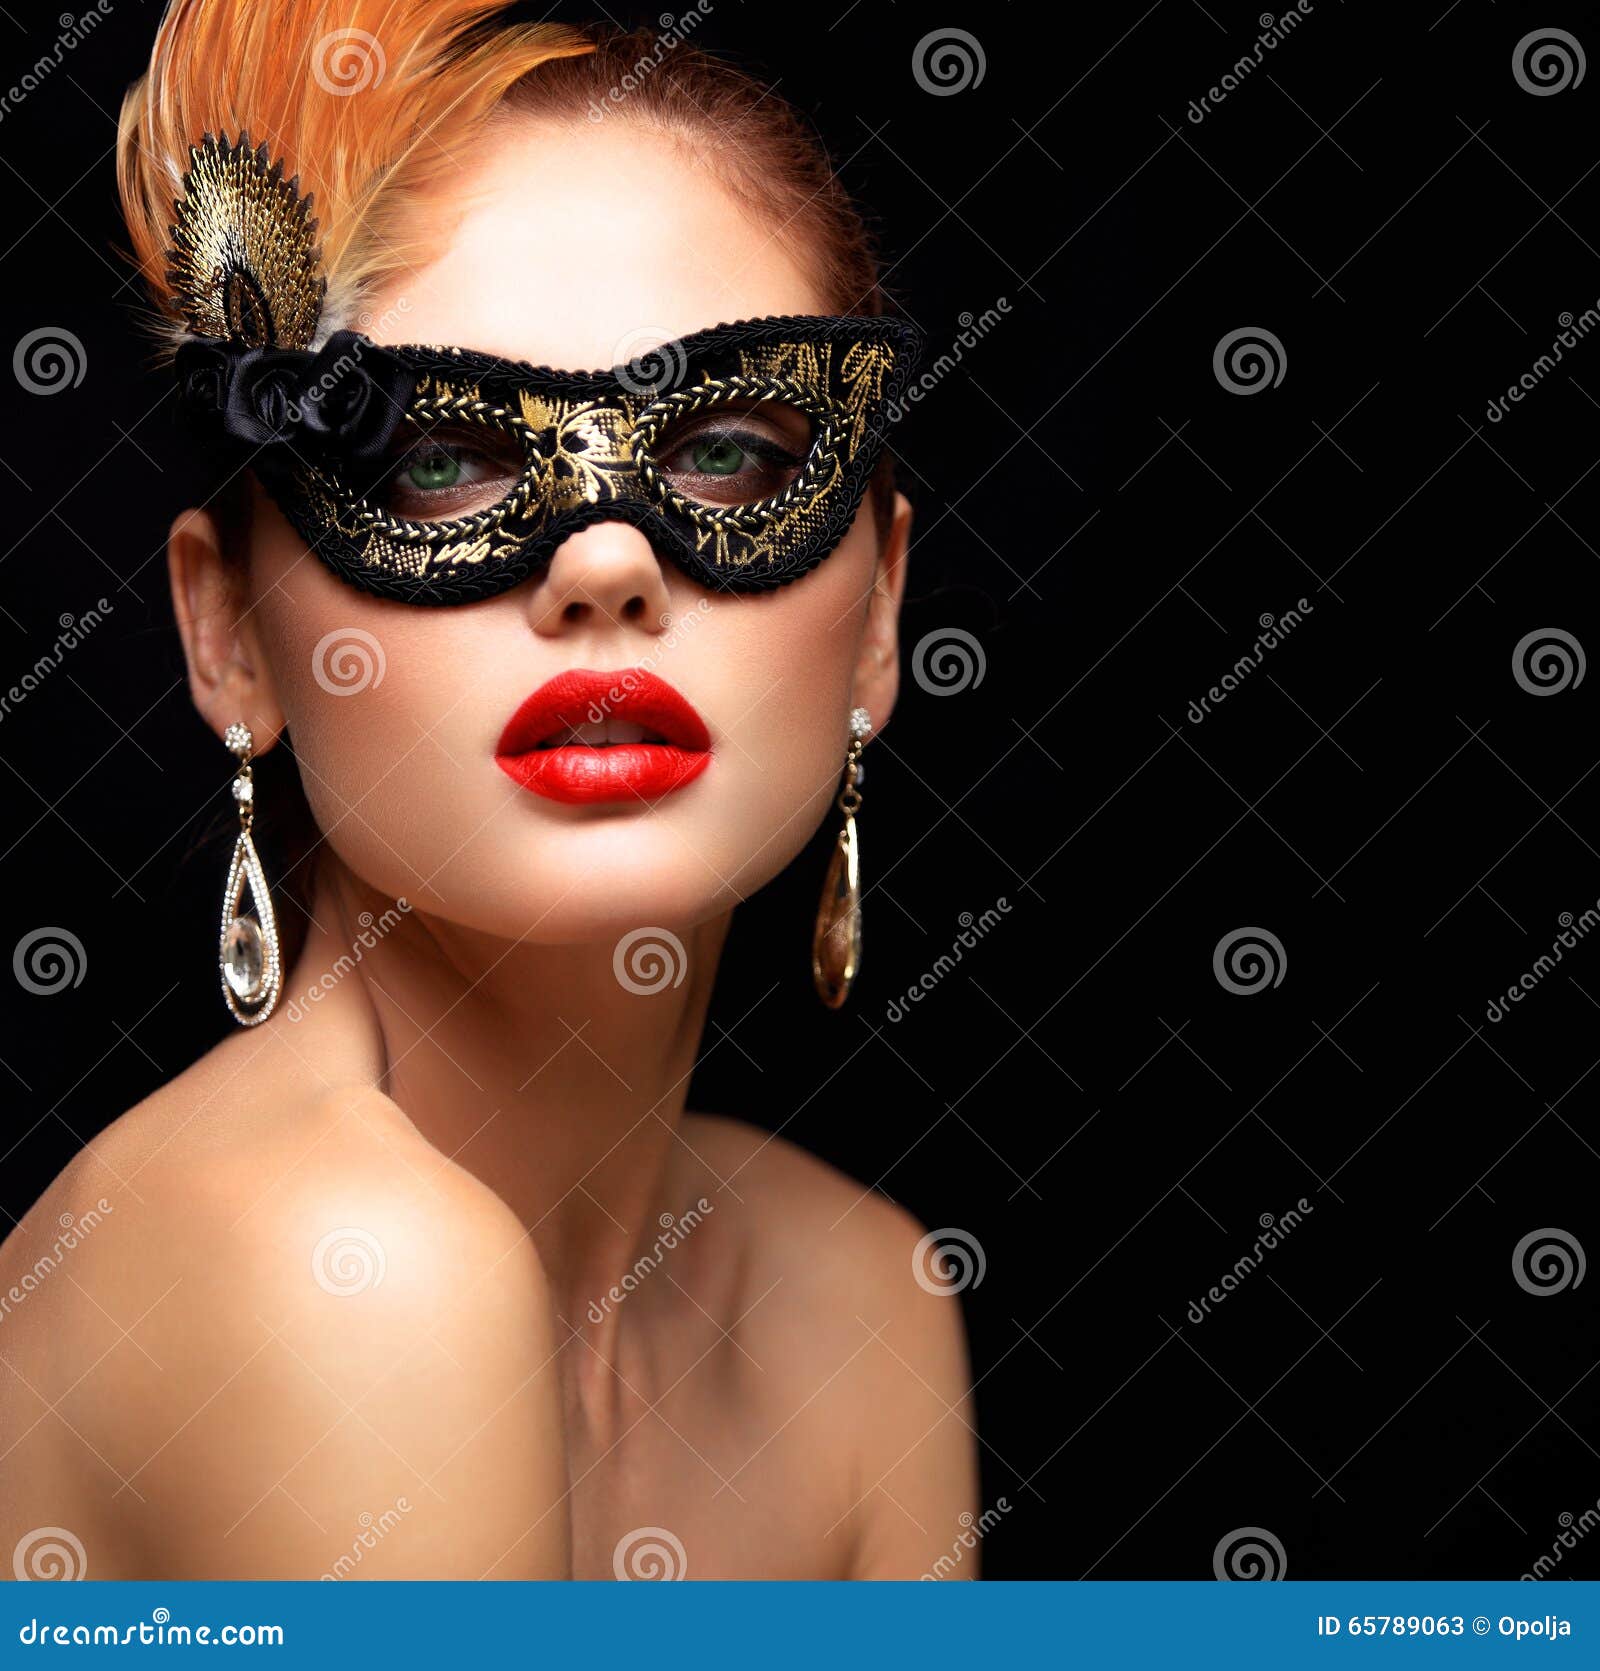 Máscara Veneciana Del Carnaval De La Mascarada De La Mujer Modelo De La  Belleza Que Lleva En El Partido Imagen de archivo - Imagen de persona,  traje: 132628377